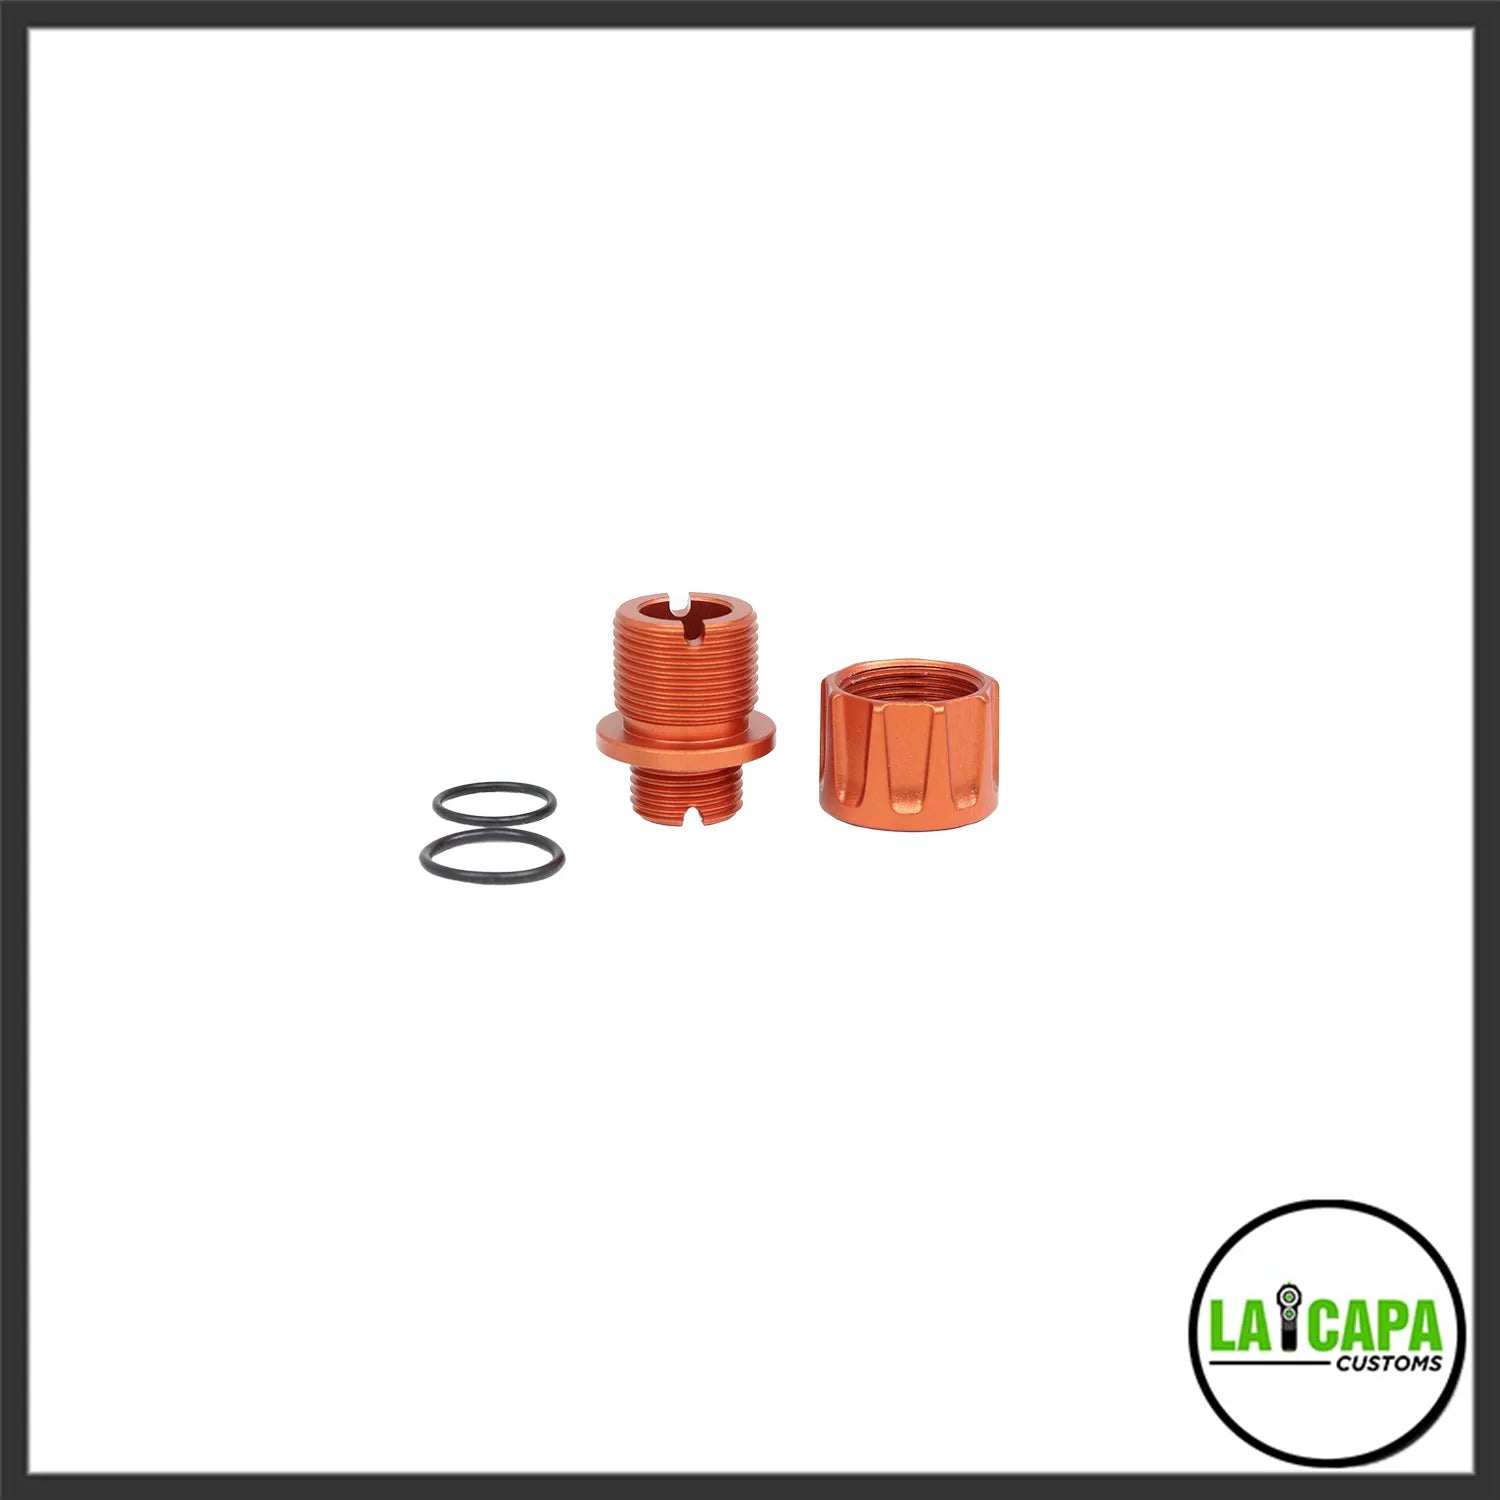 LA Capa Customs “S1” Reversible Thread Adapter for Hi Capa - Orange